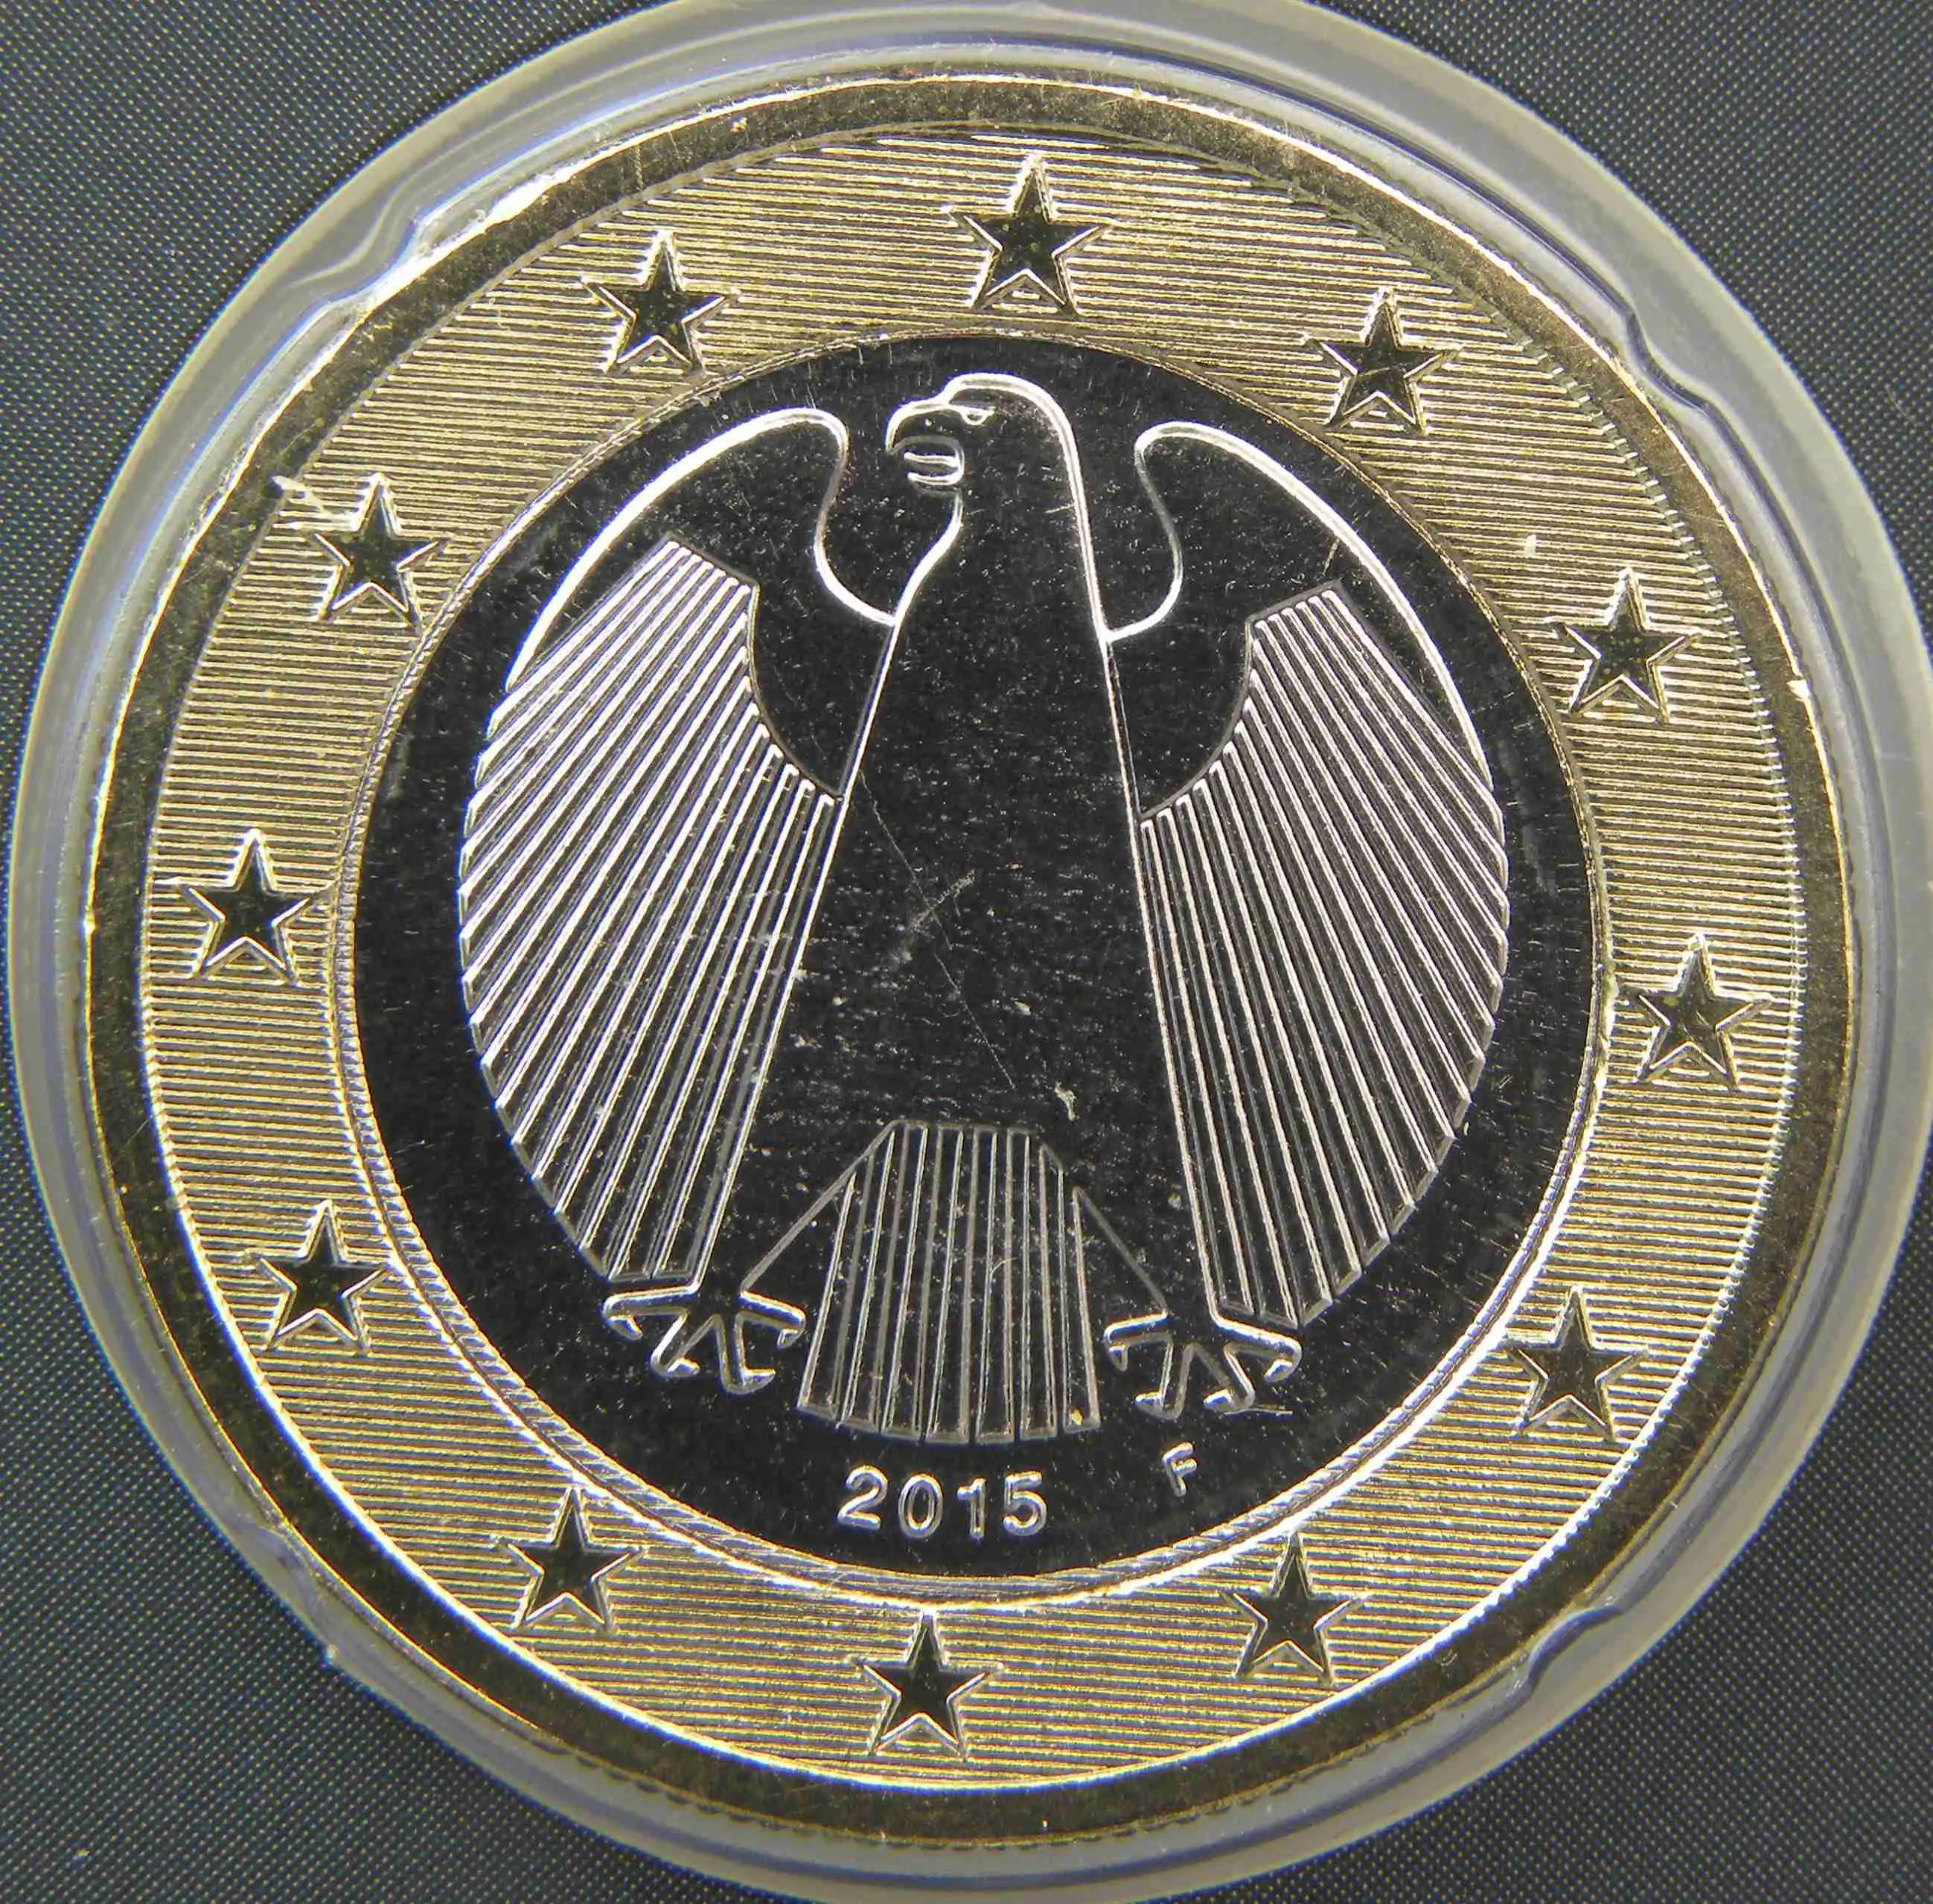 Deutschland 1 Euro Münze 2015 F - euro-muenzen.tv - Der Online